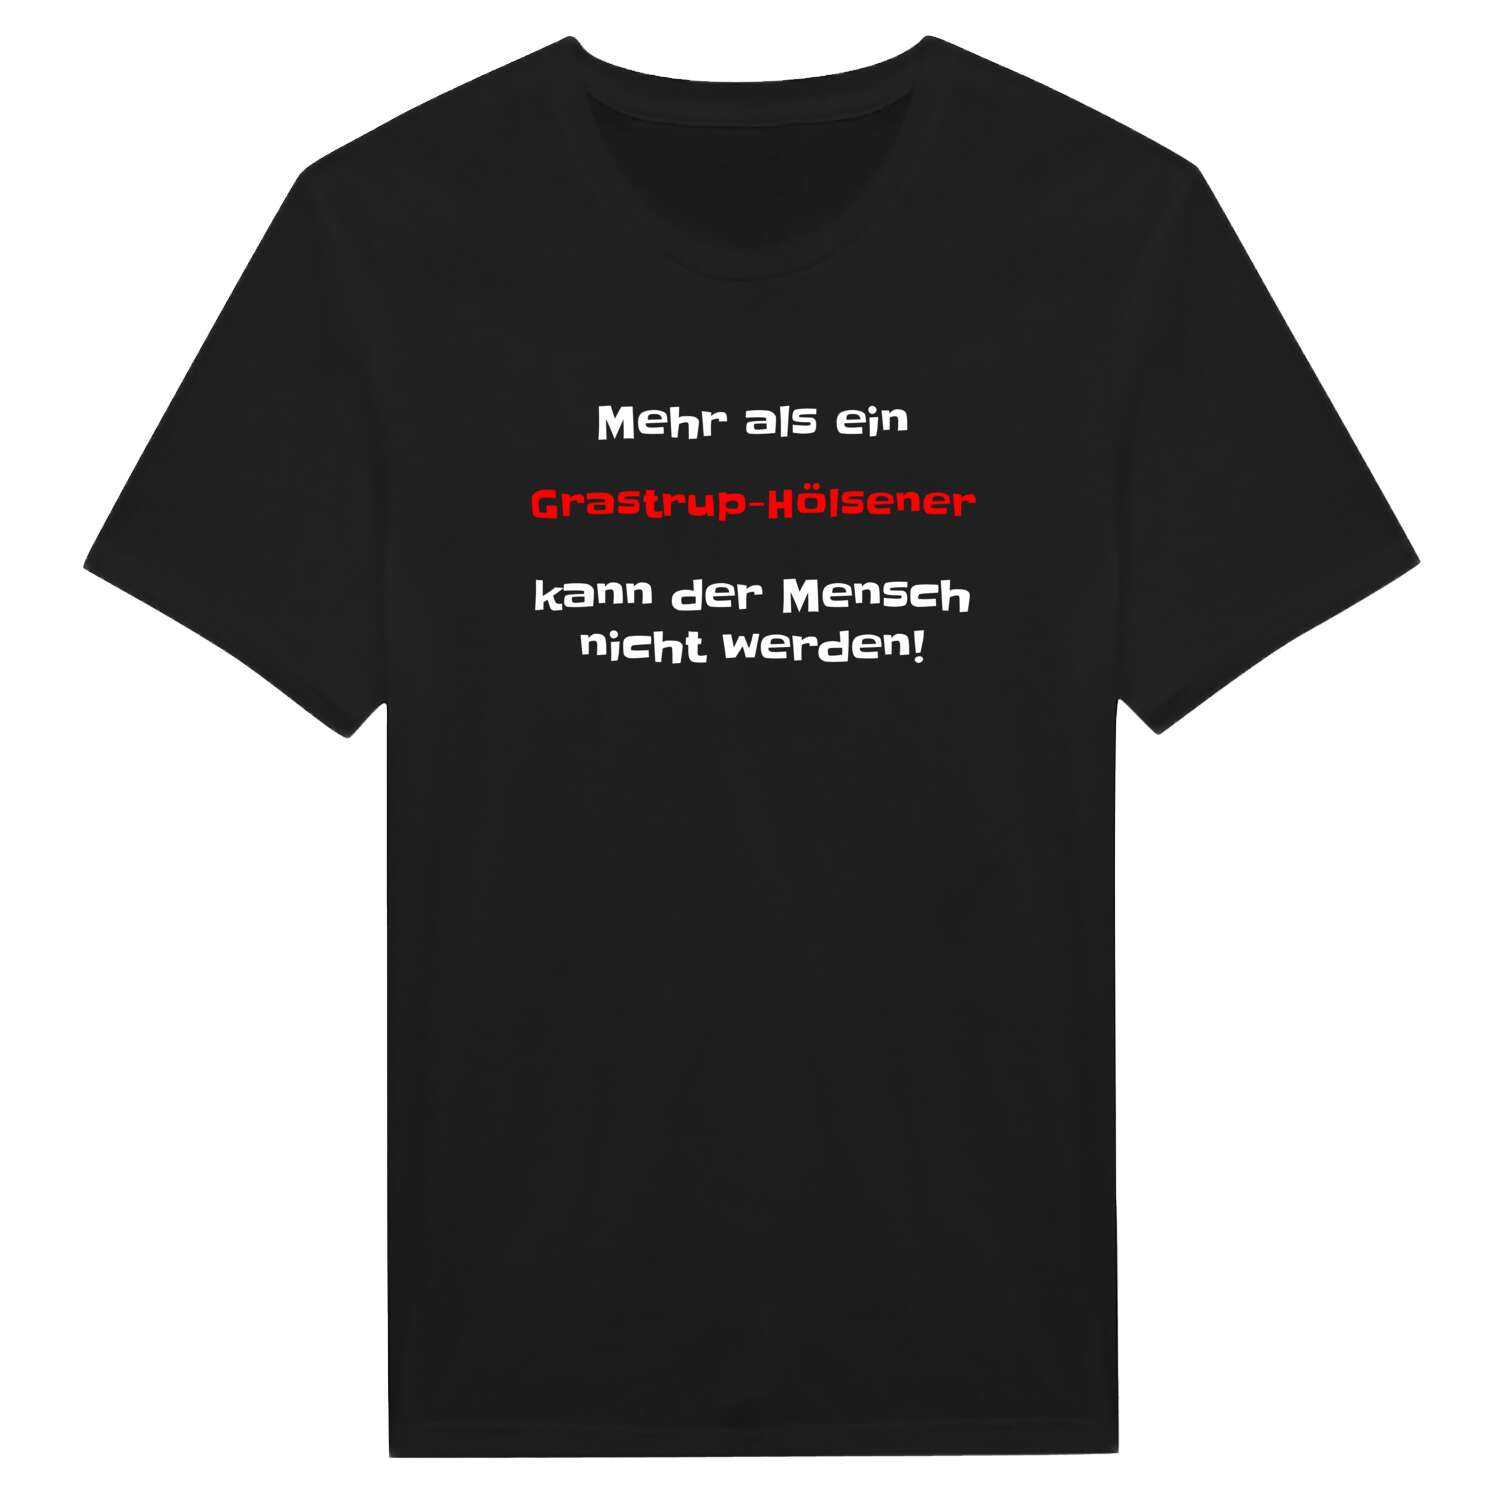 Grastrup-Hölsen T-Shirt »Mehr als ein«